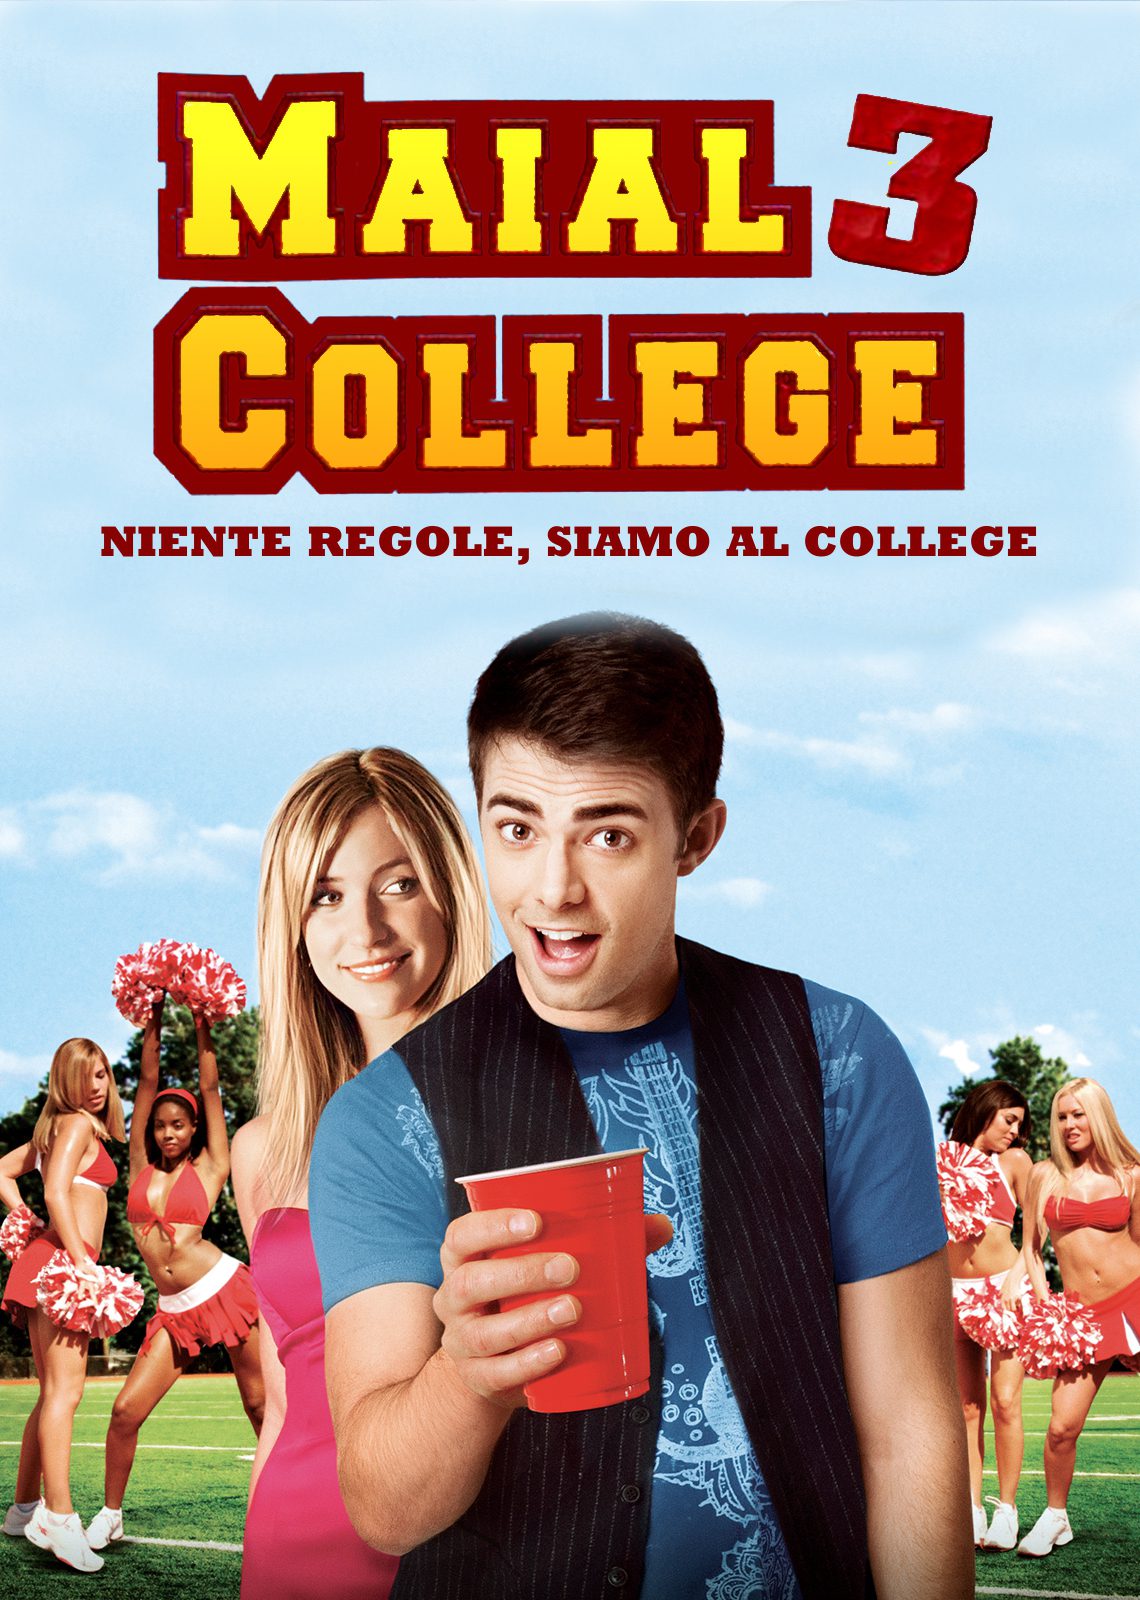 Maial College 3: Niente regole, siamo al college [HD] (2009)